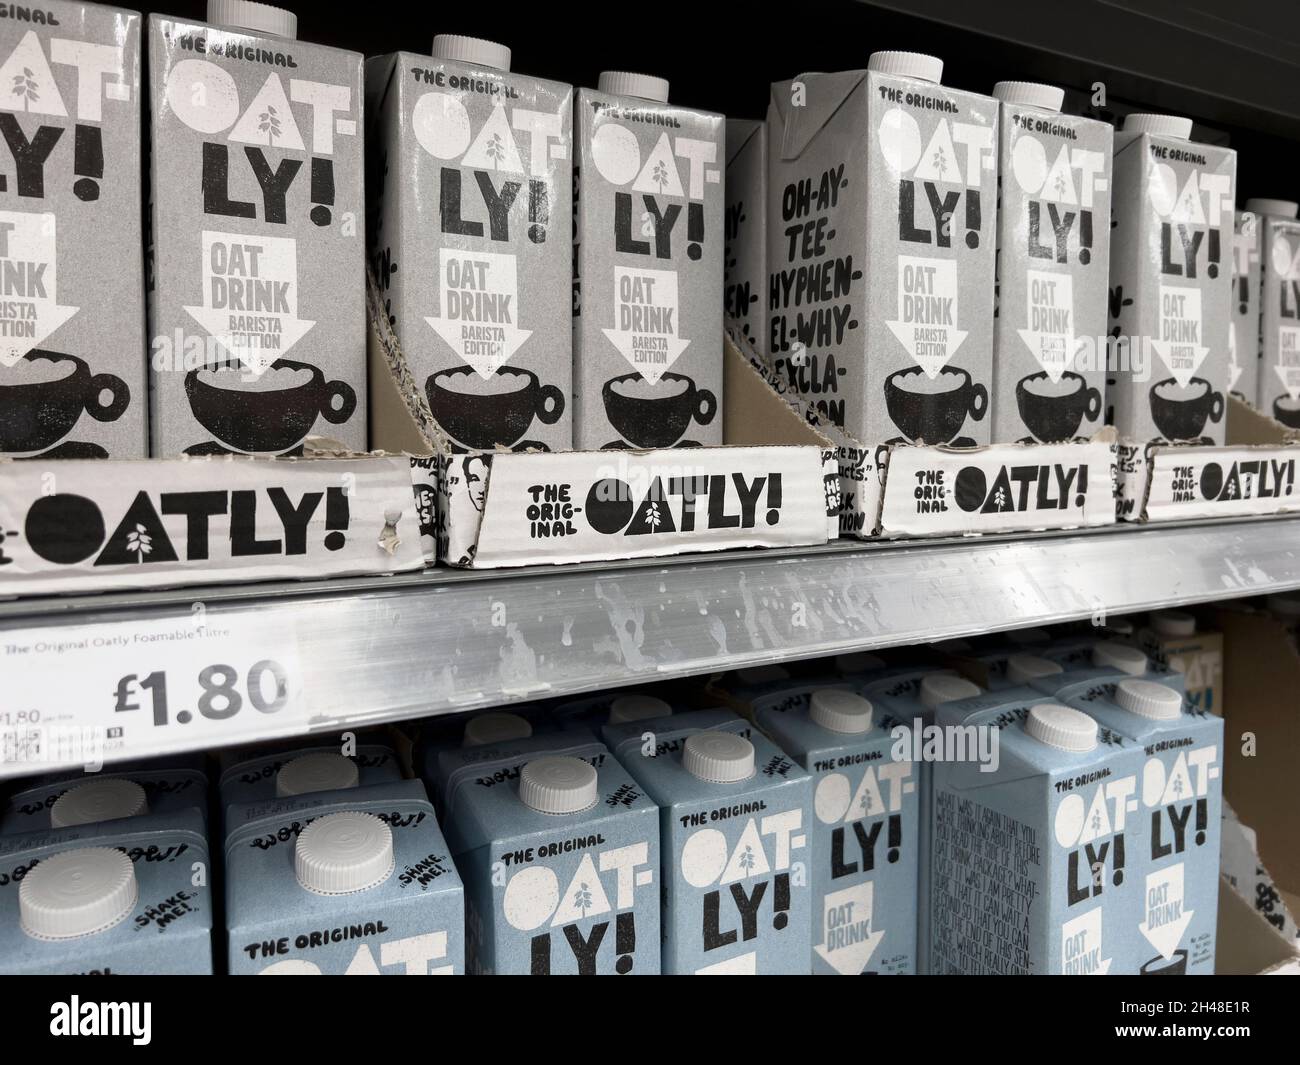 Londra / UK - 28 ottobre 2021 - file di cartoni di latte Oatly in un supermercato con una profondità di campo poco profonda. Oatly è un latte vegano senza latte alternativo Foto Stock